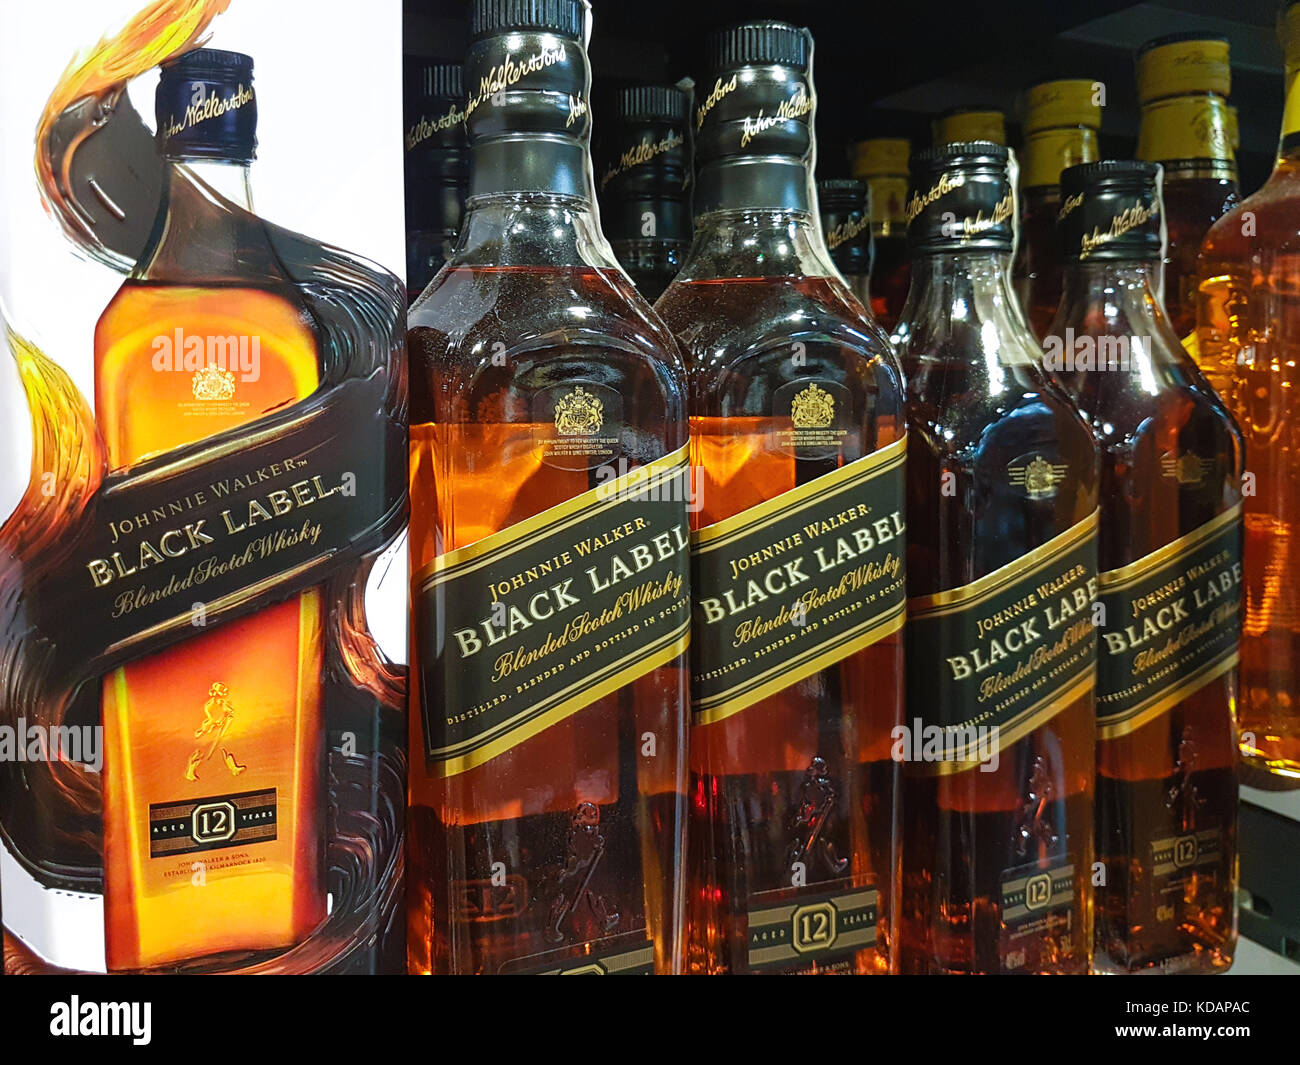 Whisky Bottles Stockfotos & Whisky Bottles Bilder - Alamy